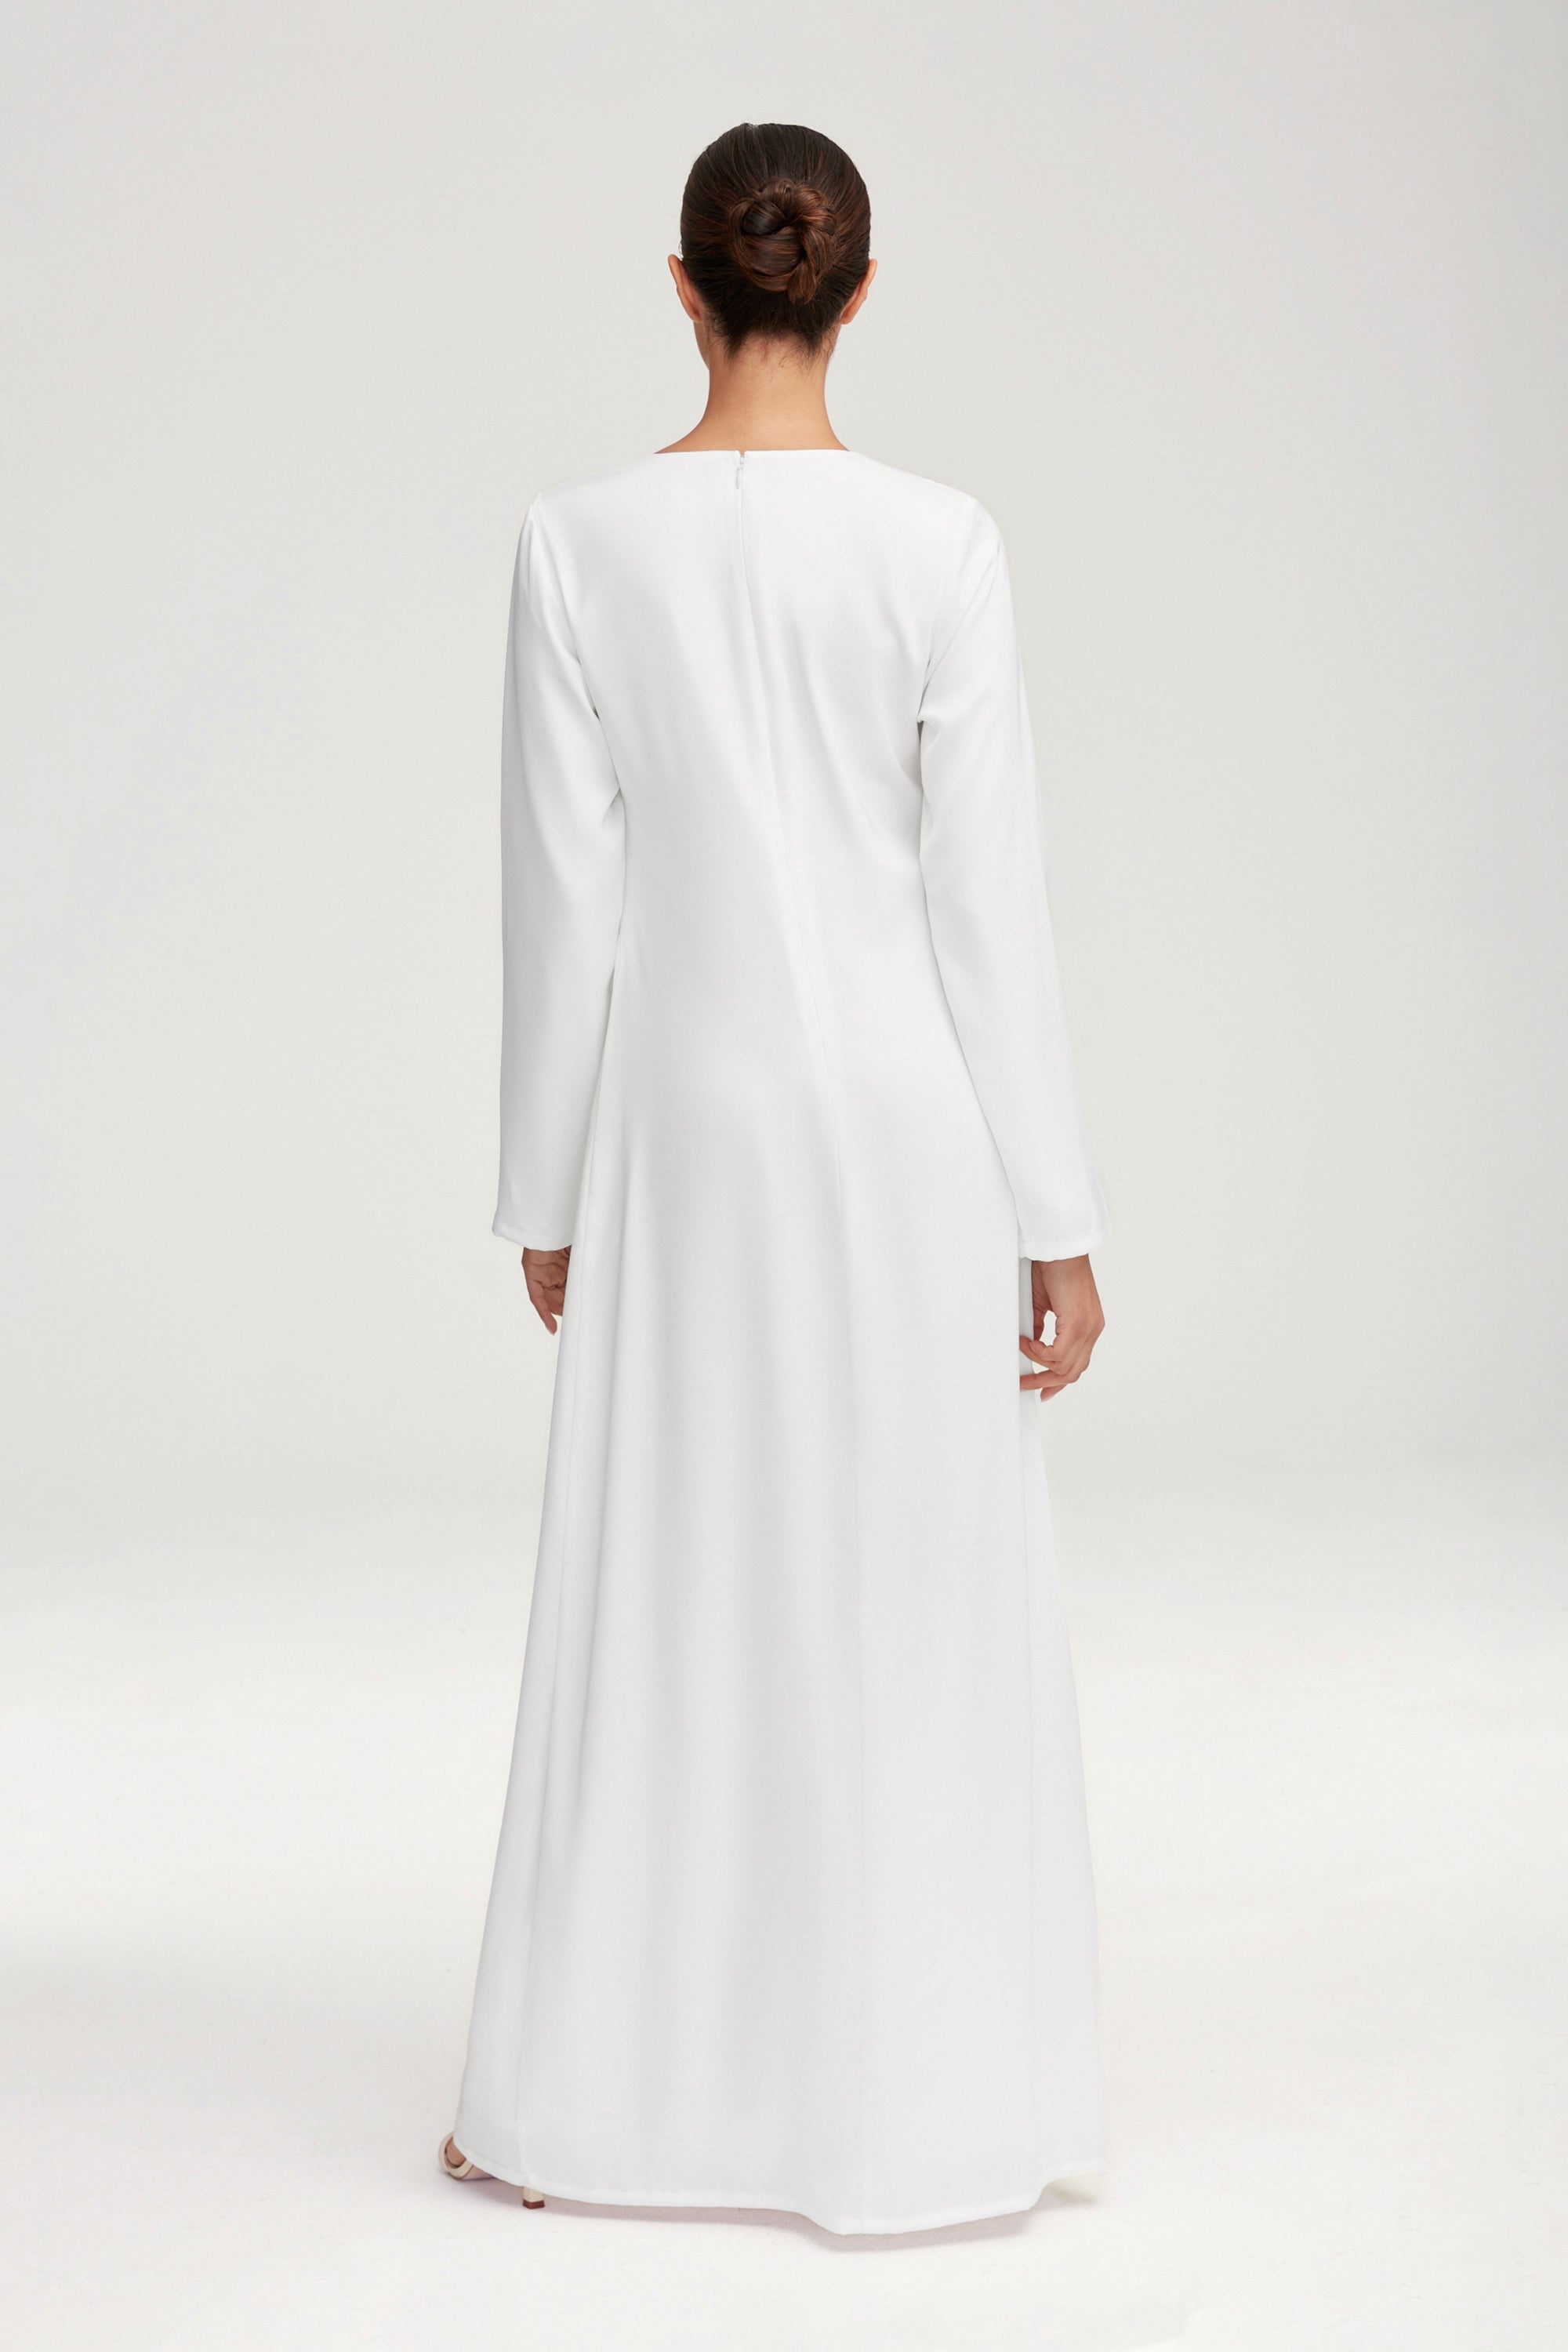 Essential Inner Slip Satin Maxi Dress - White Clothing Veiled 